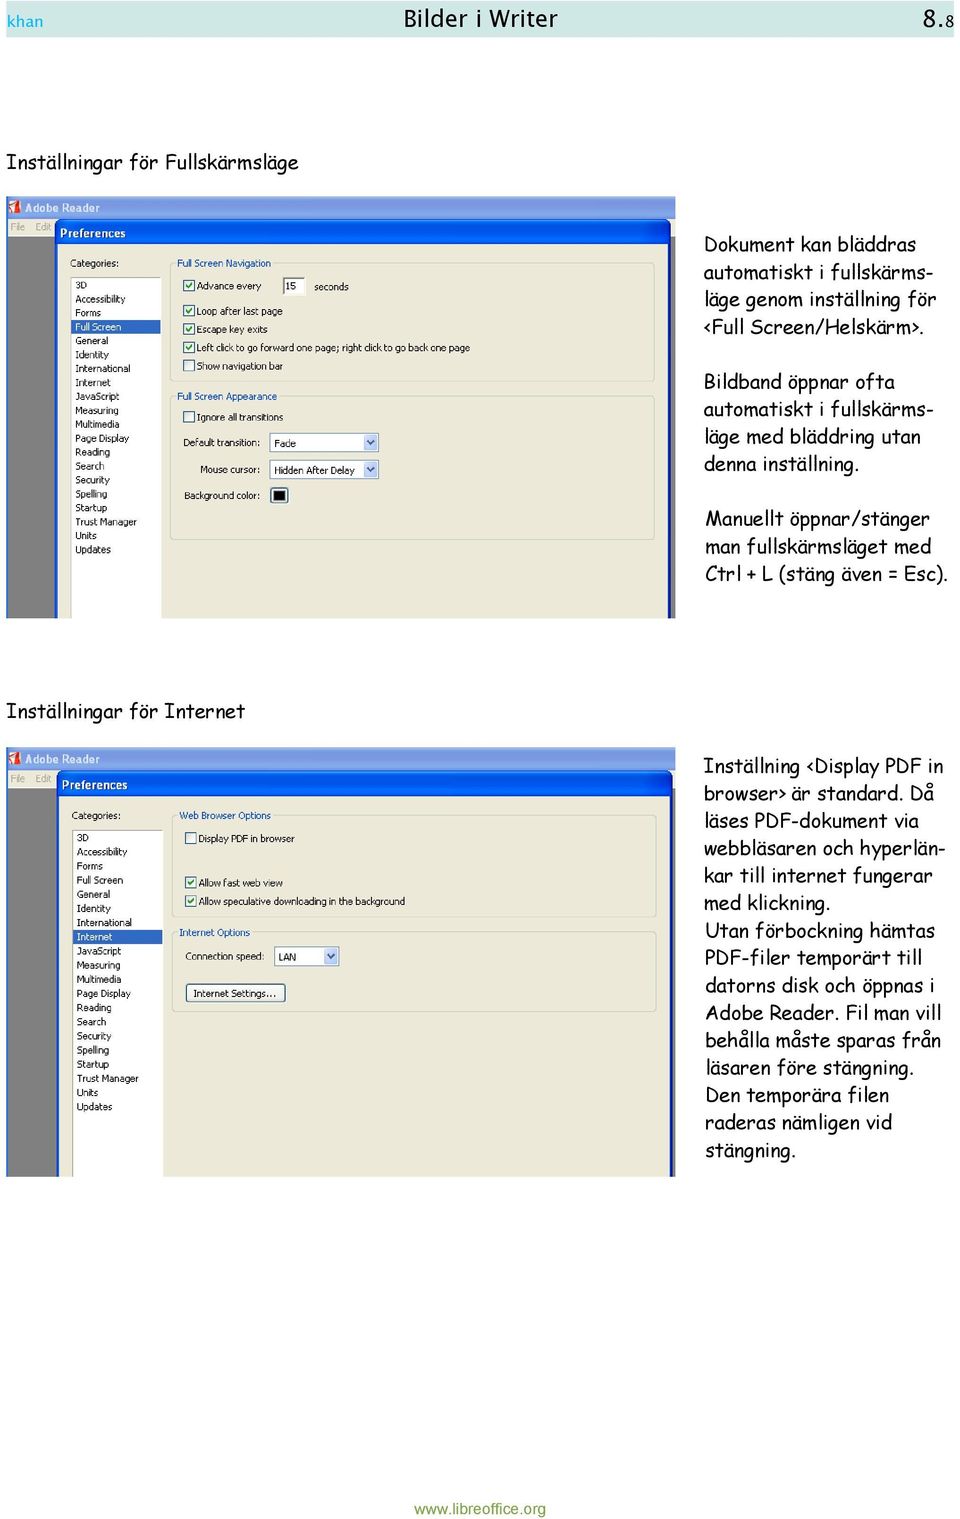 Inställningar för Internet Inställning <Display PDF in browser> är standard. Då läses PDF-dokument via webbläsaren och hyperlänkar till internet fungerar med klickning.